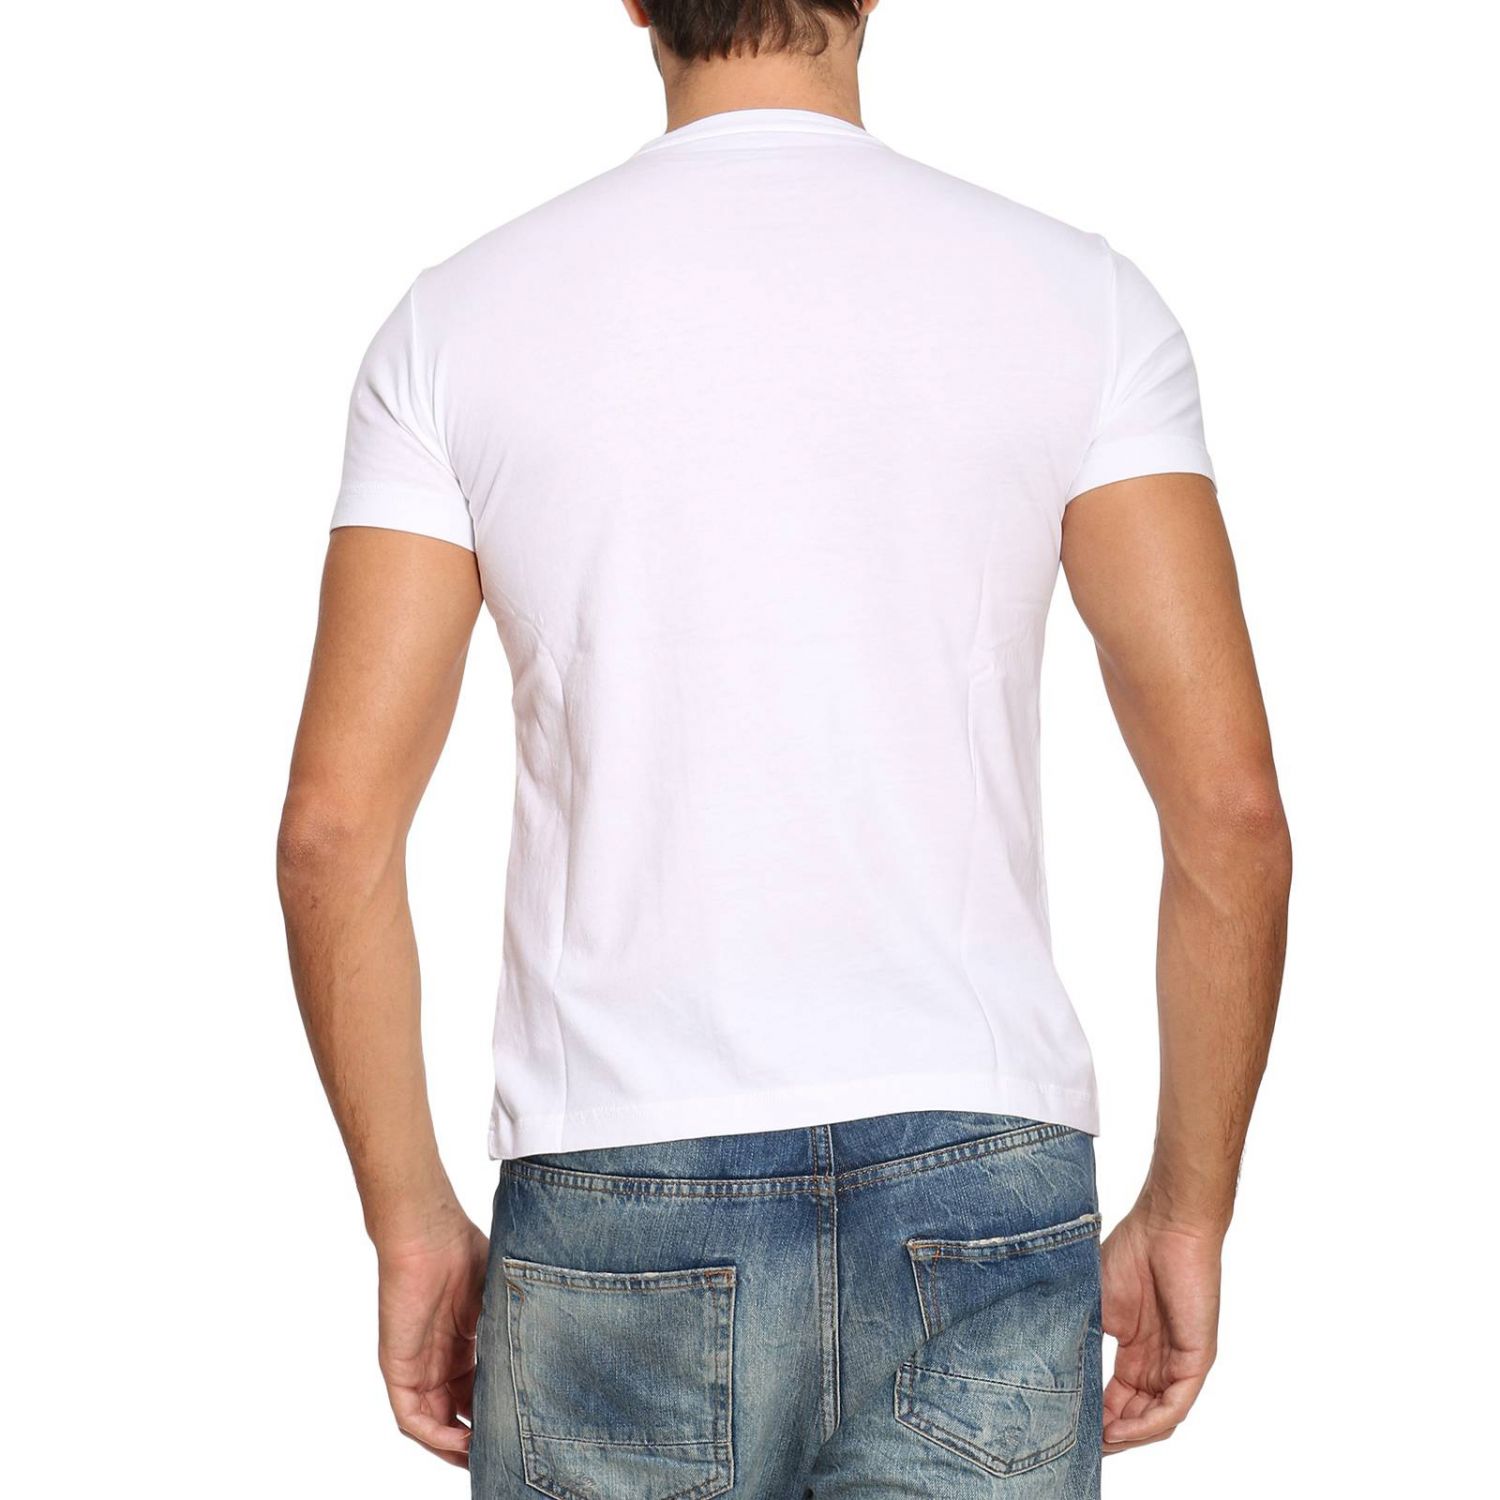 Ea7 Outlet: T-shirt men | T-Shirt Ea7 Men White | T-Shirt Ea7 6YPT56 ...